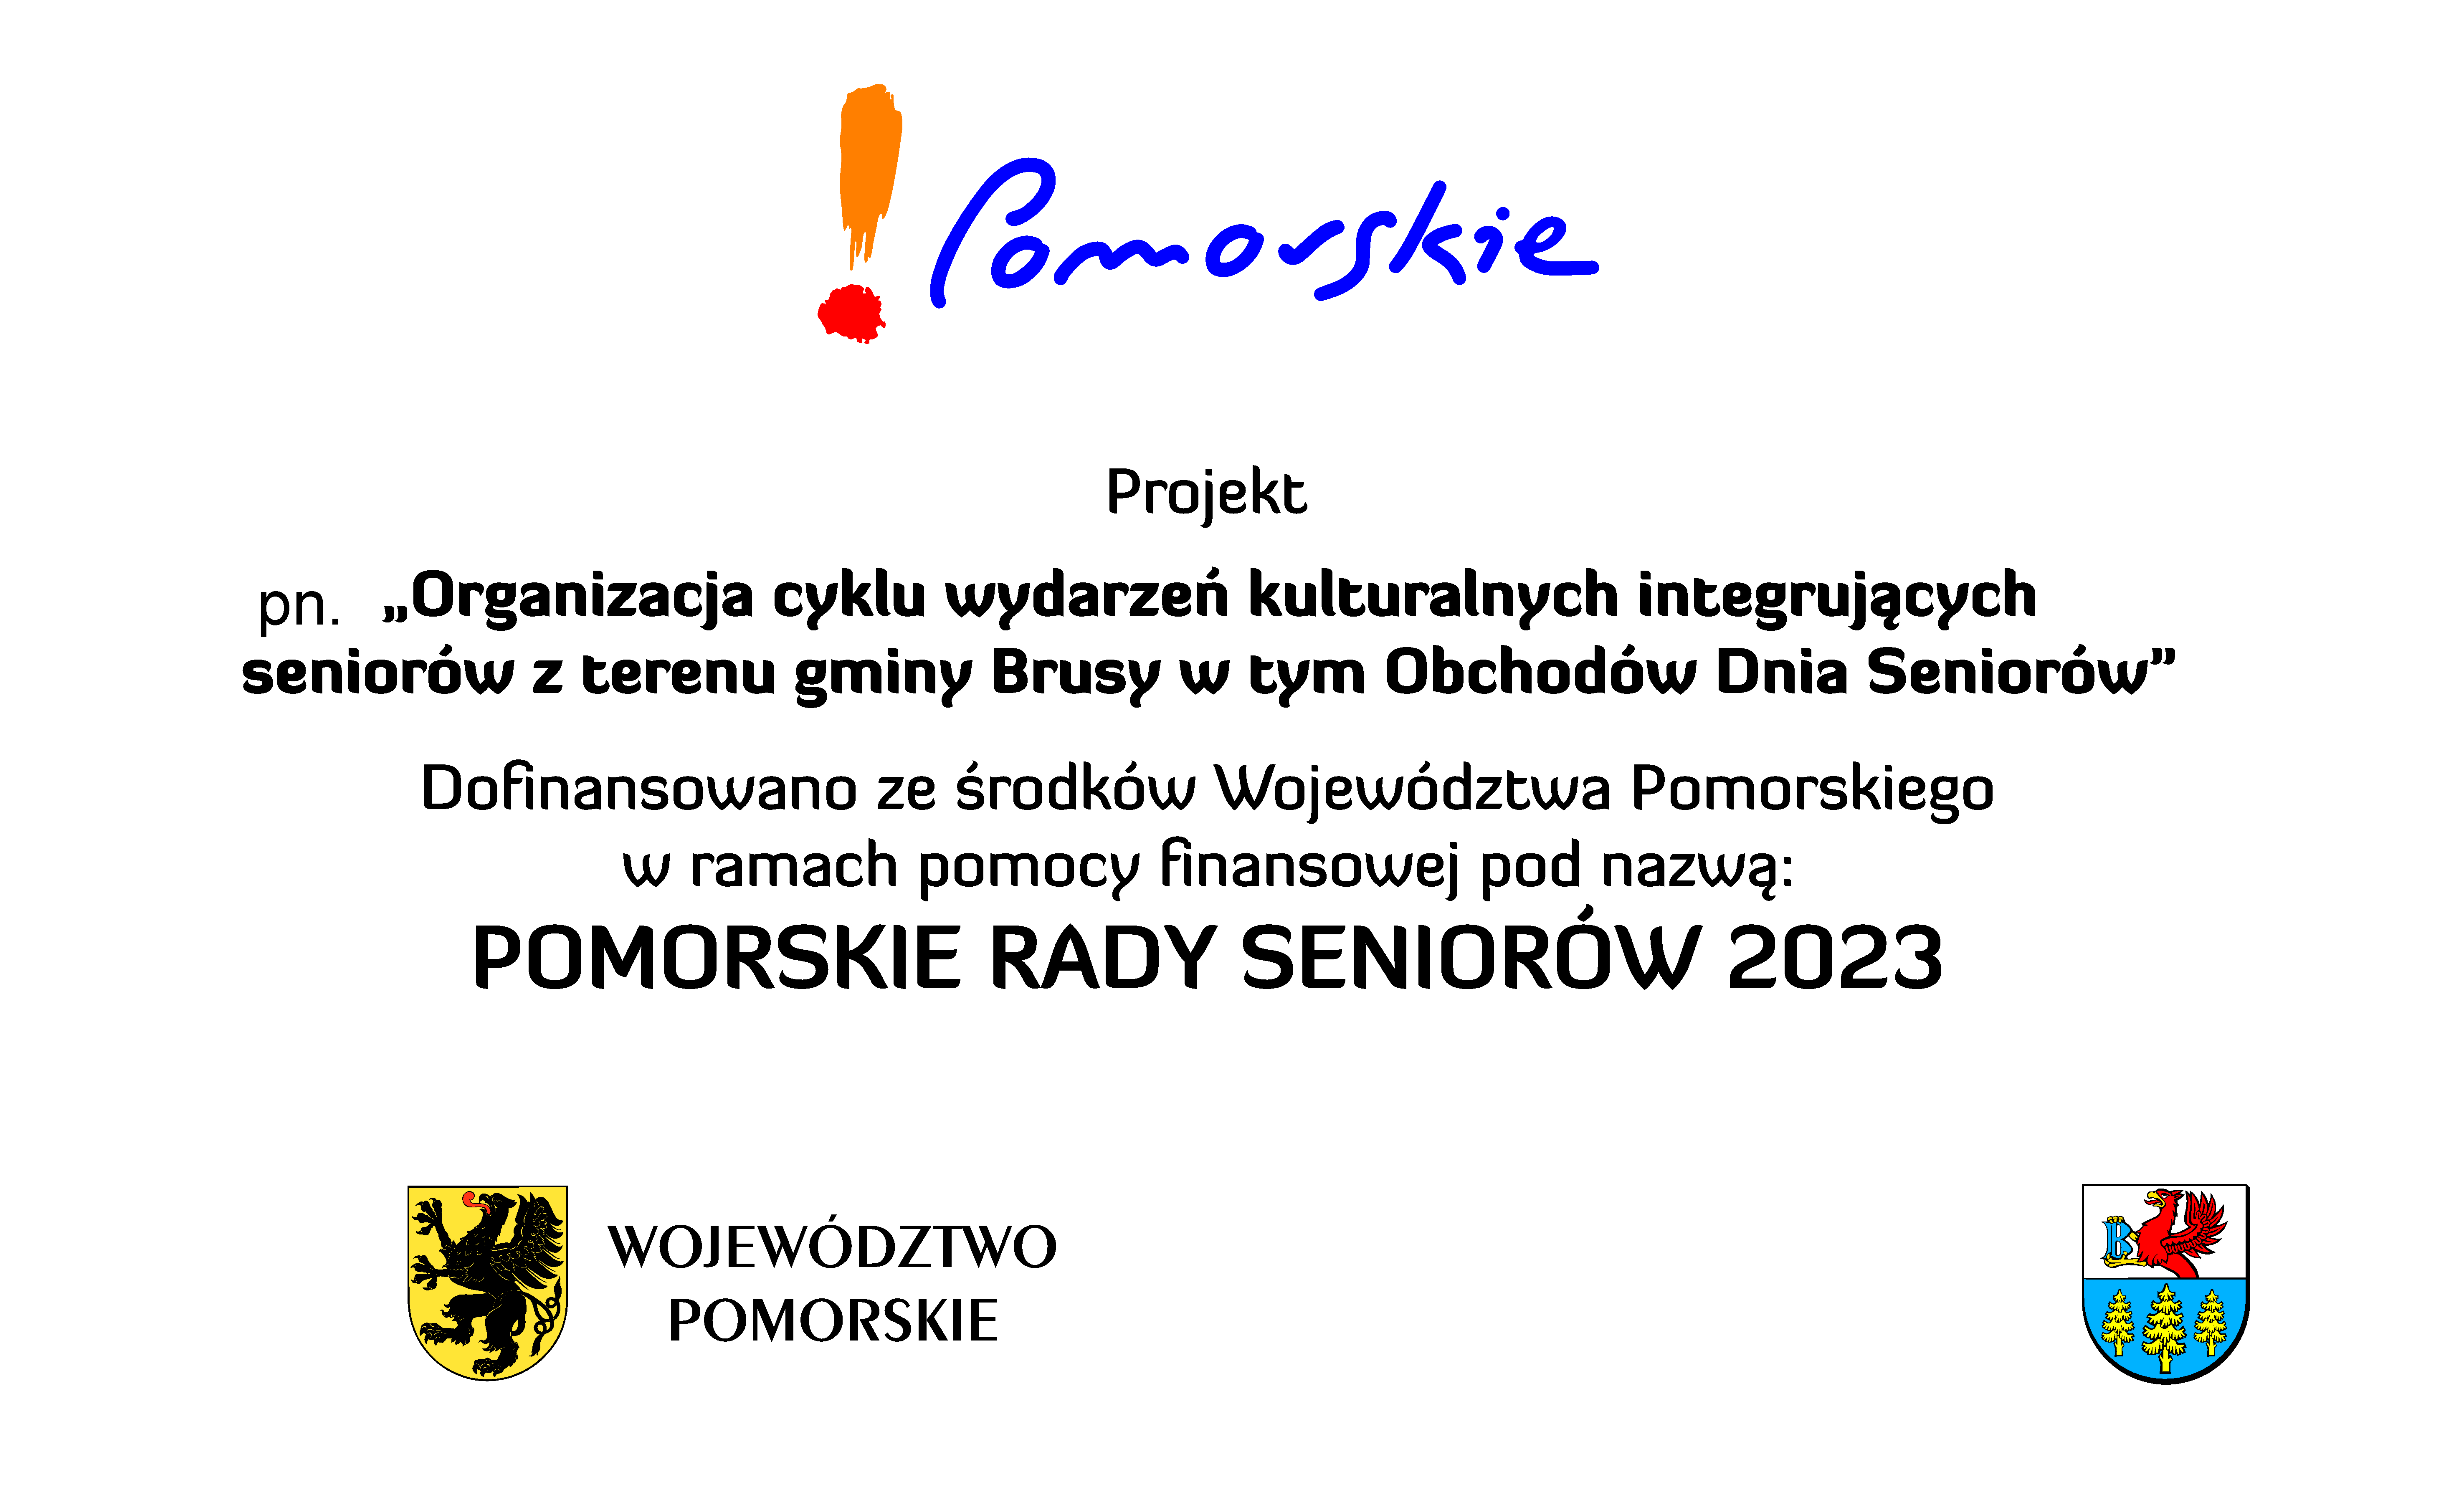 TABLICA-1-wersja-podstawowa-Pomorskie-Rady-Seniorow-2023-GMINY-edycja.jpg